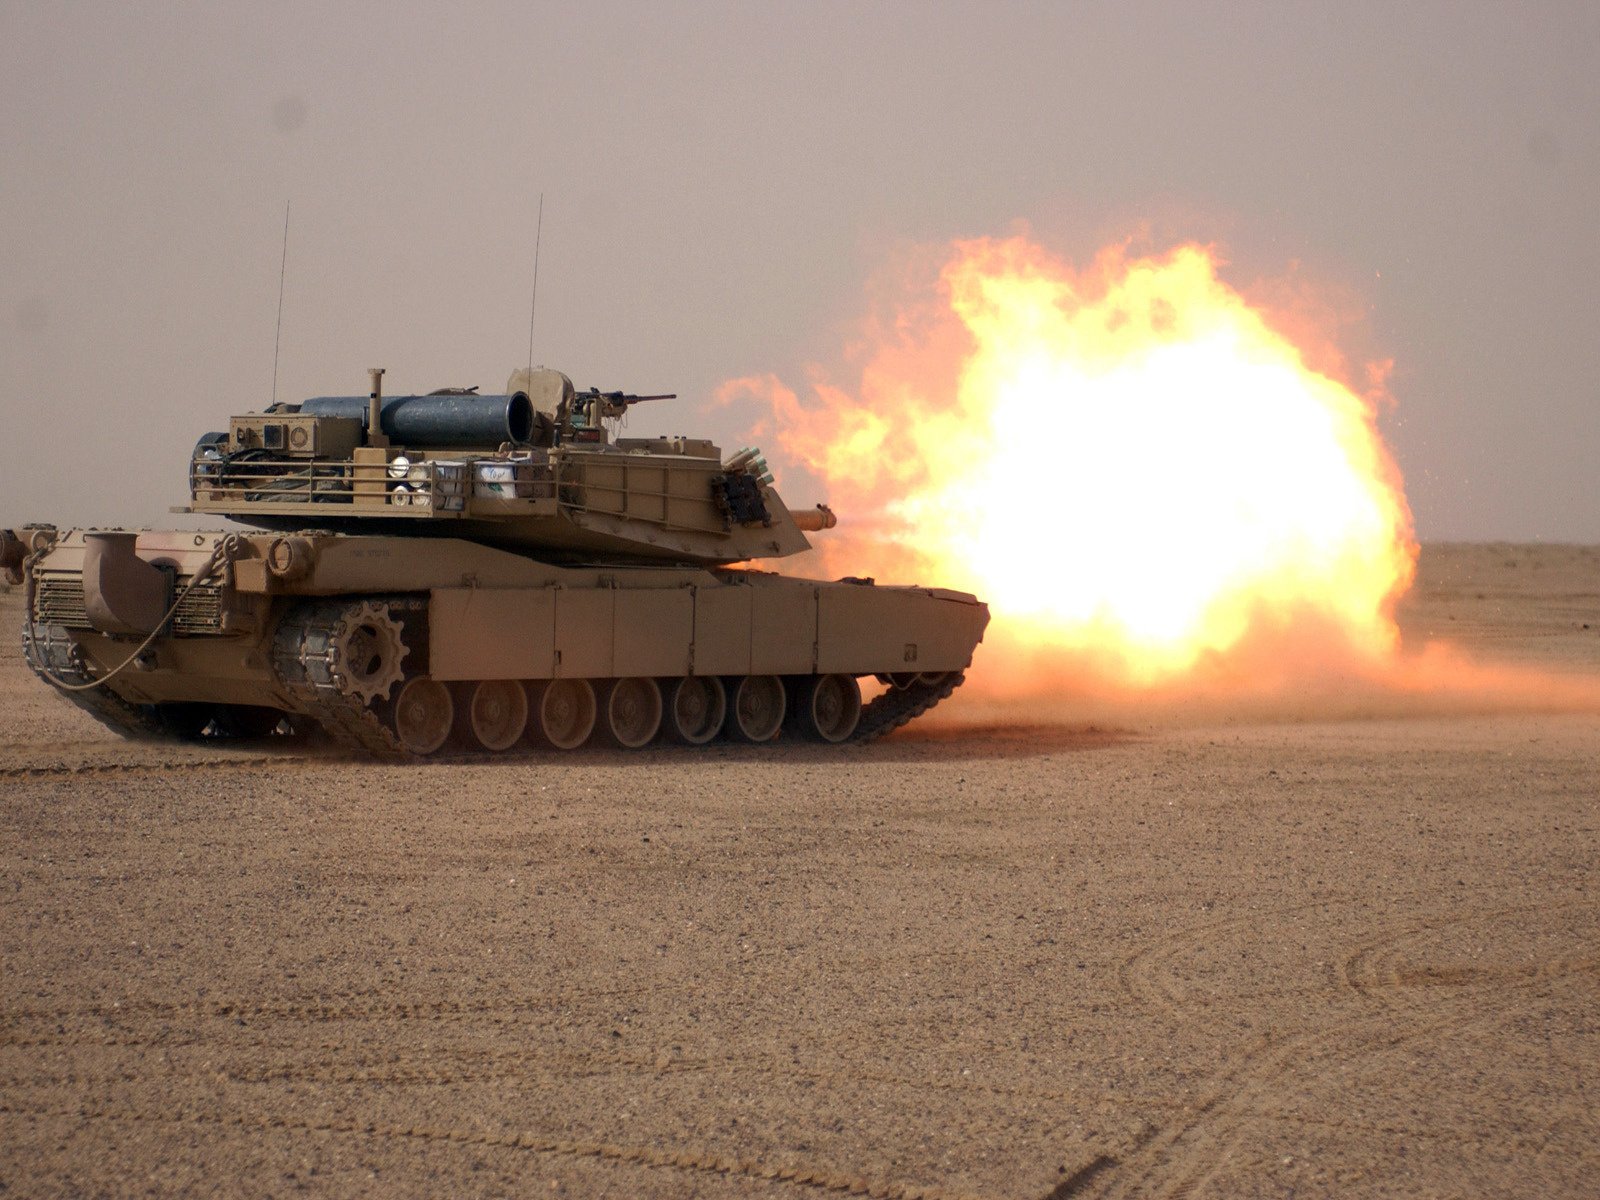 Залп из танка в пустыне огромный шар огня